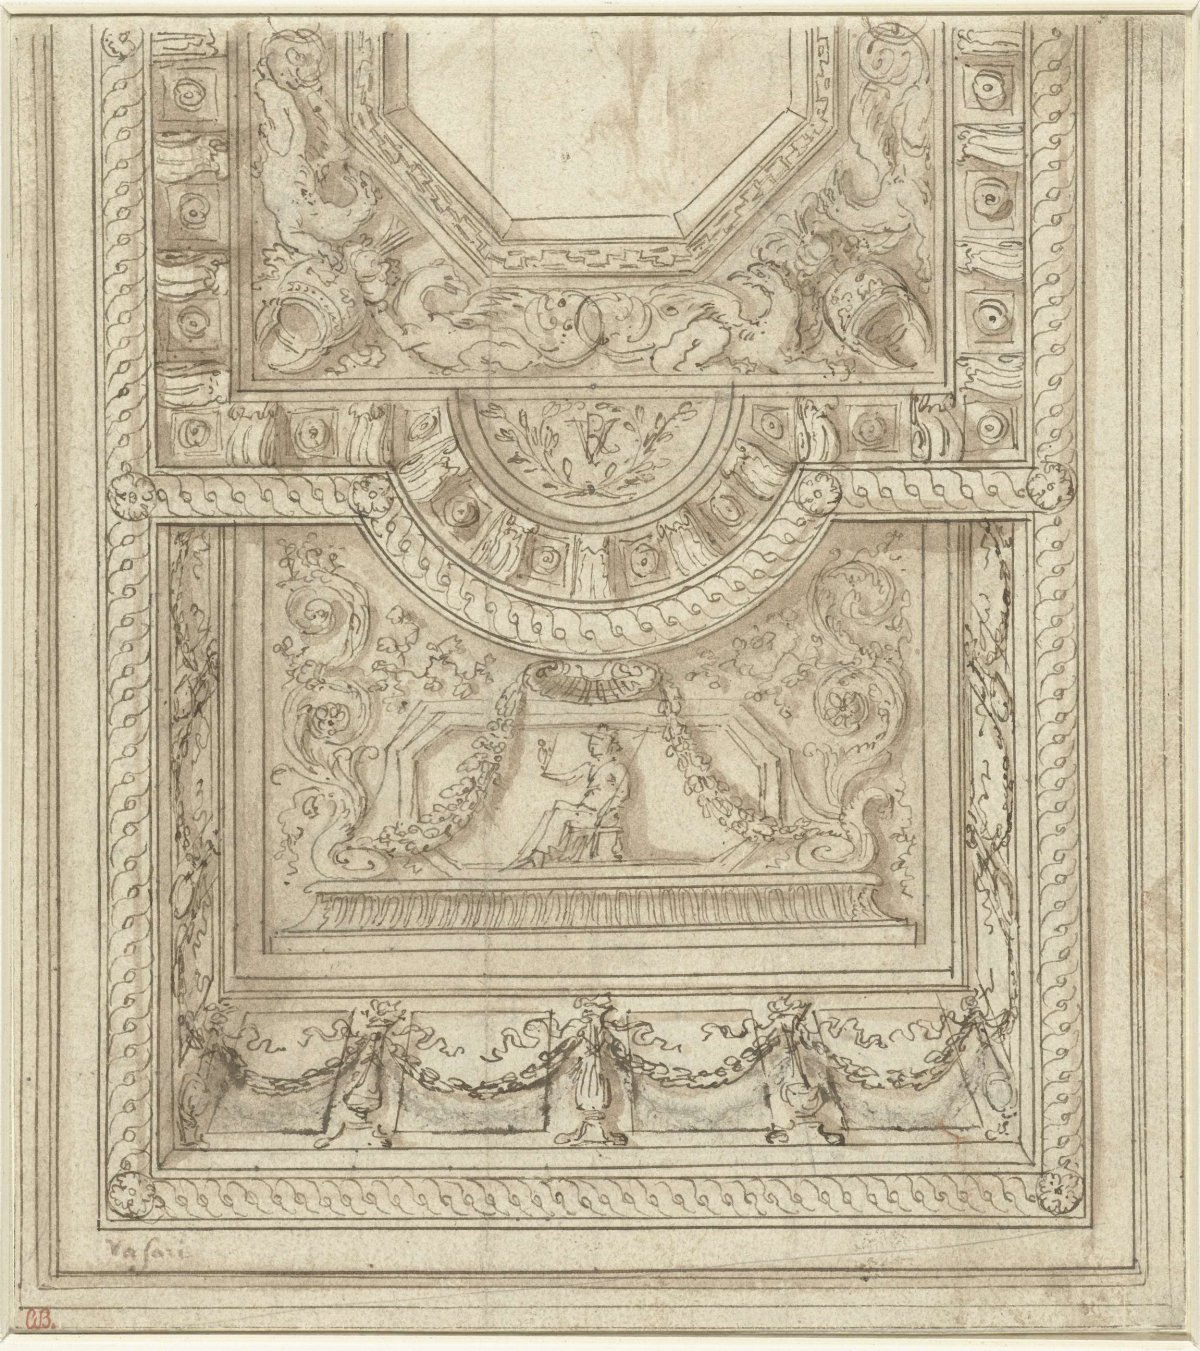 Design for a ceiling, Giorgio Vasari, 1521 - 1574